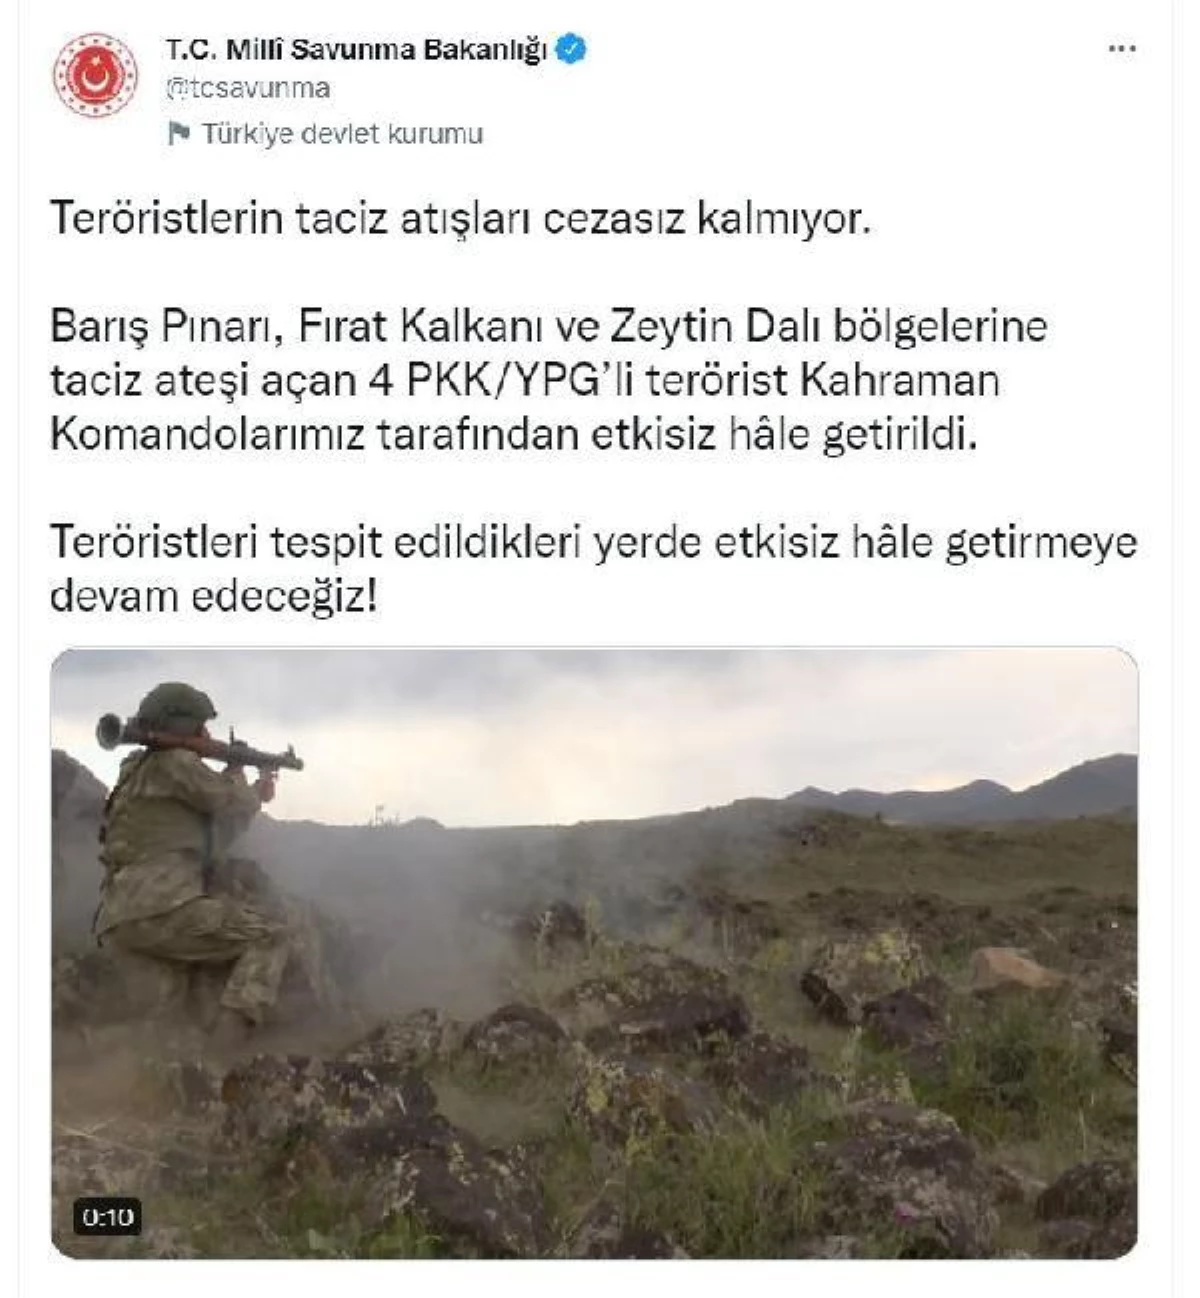 MSB: "Barış Pınarı, Fırat Kalkanı ve Zeytin Dalı bölgelerine taciz ateşi açan 4 PKK/YPG\'li terörist, kahraman komandolarımız tarafından etkisiz hâle...